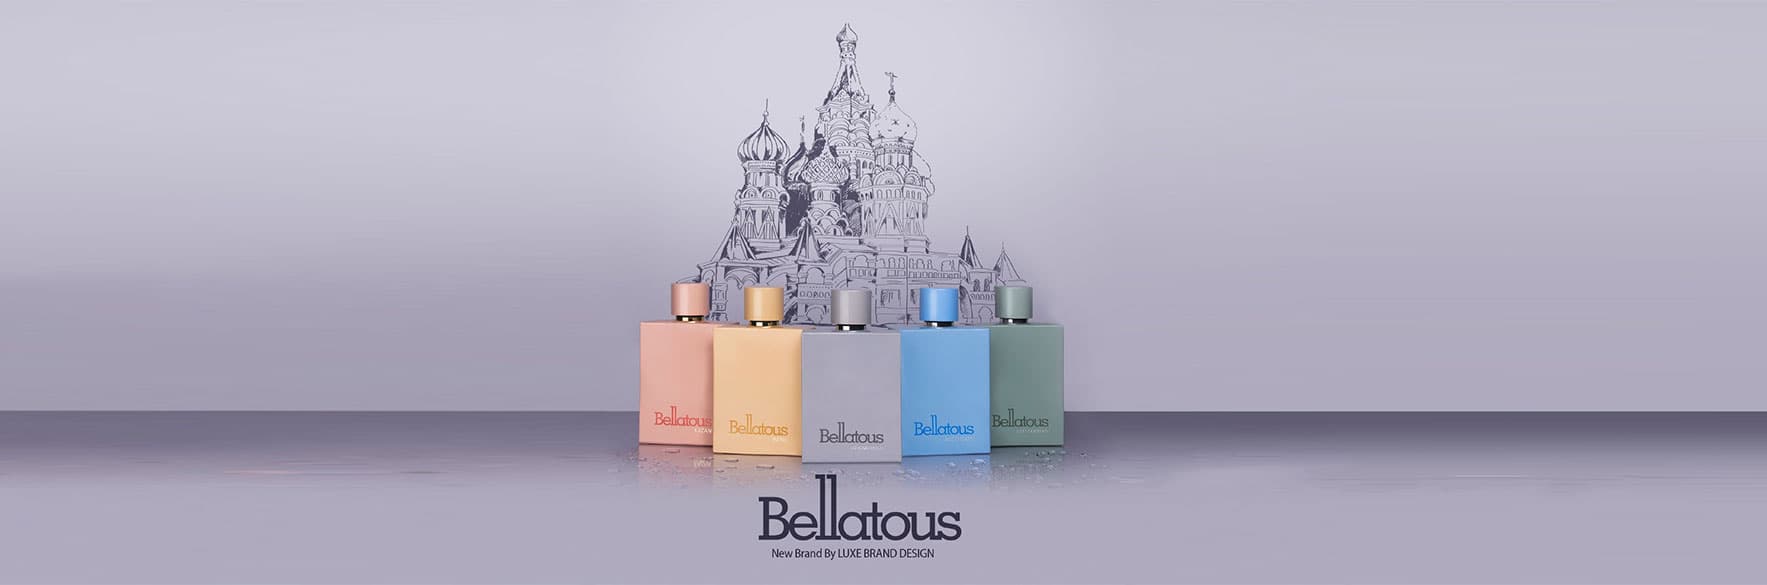 خرید عطرهای بلاتوس BELLATOUS